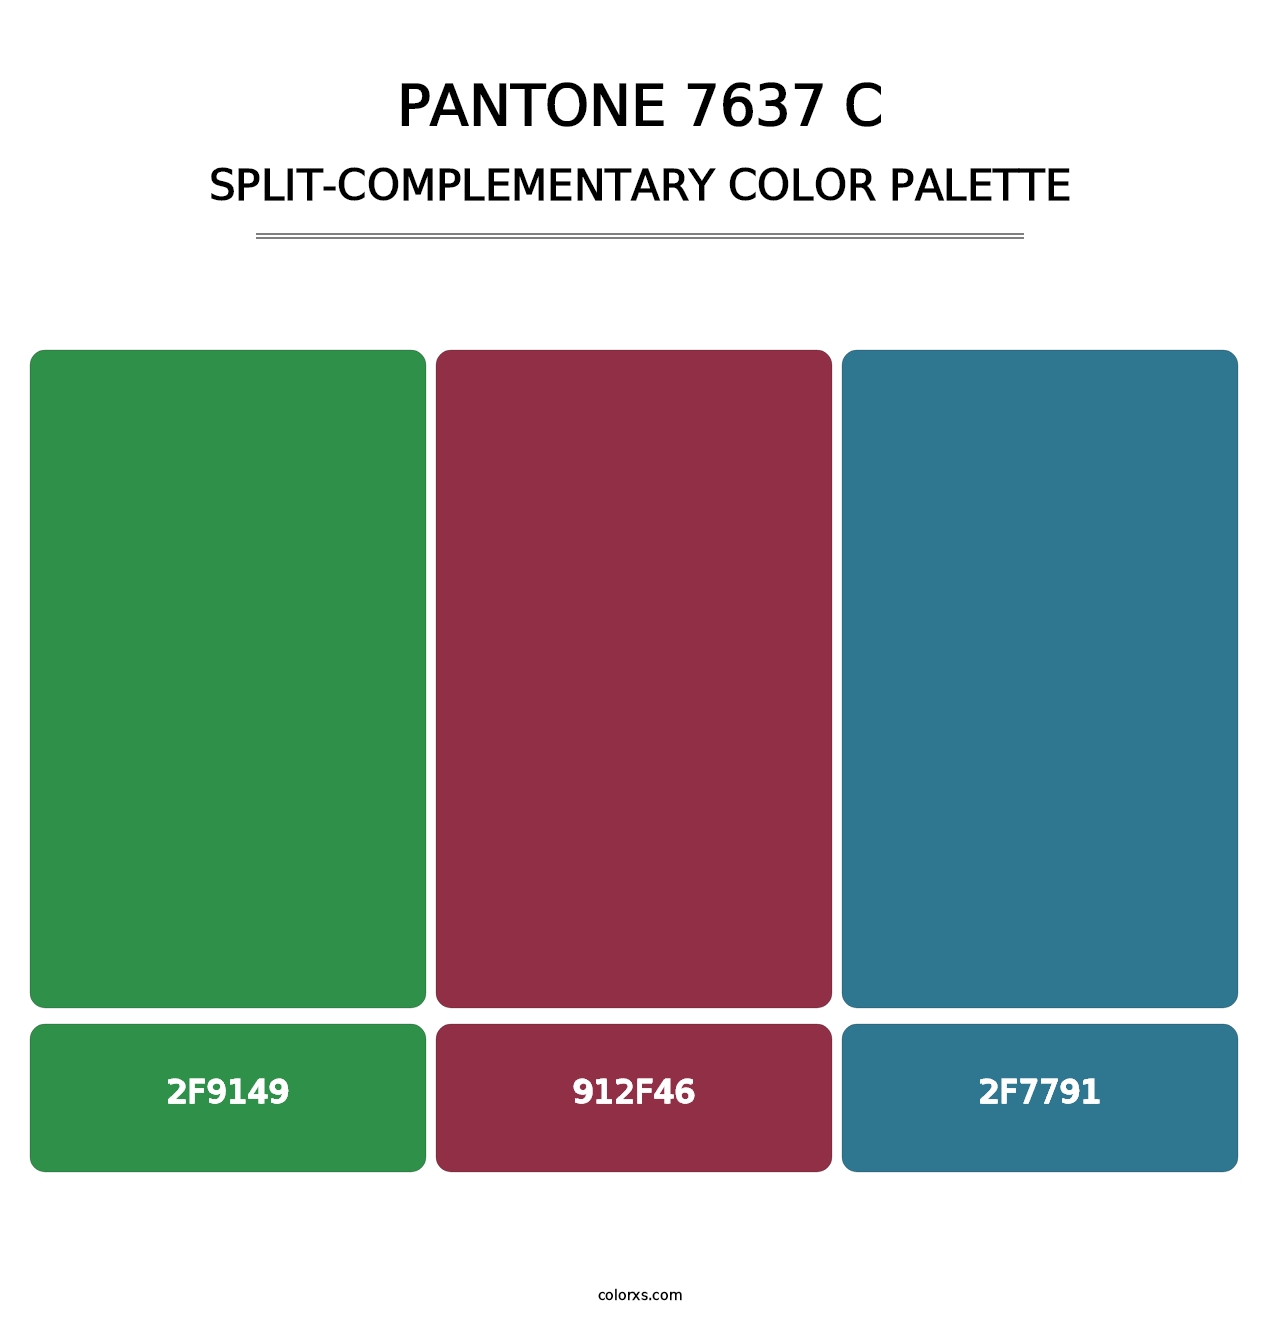 PANTONE 7637 C - Split-Complementary Color Palette